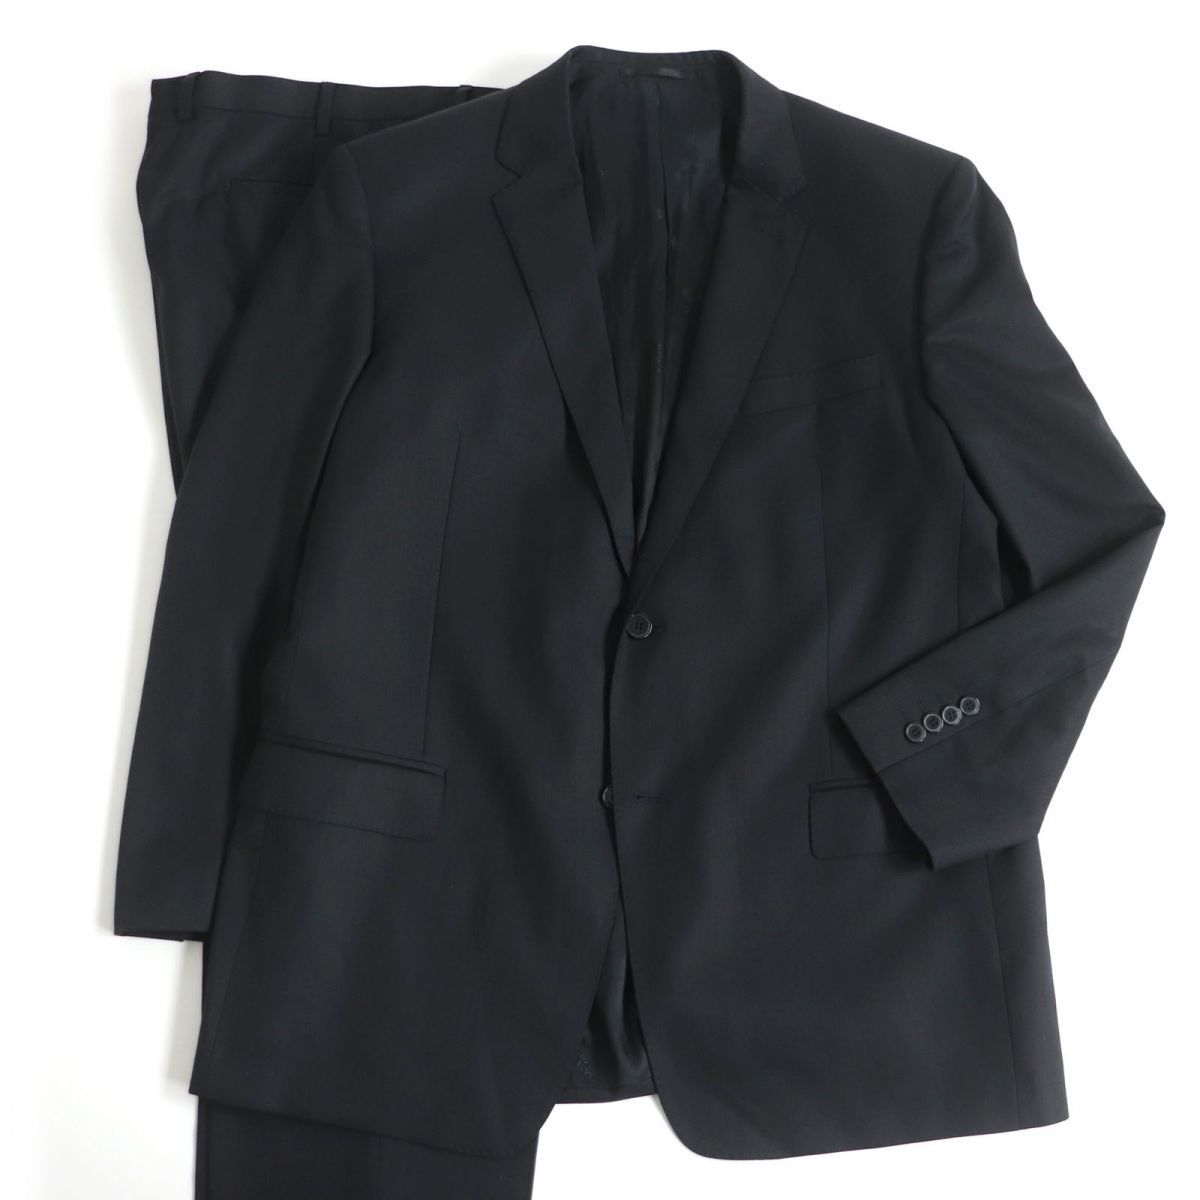 ヴェルサーチコレクションスーツ黒ストライプ セットアップ スーツ メンズ 高級品市場